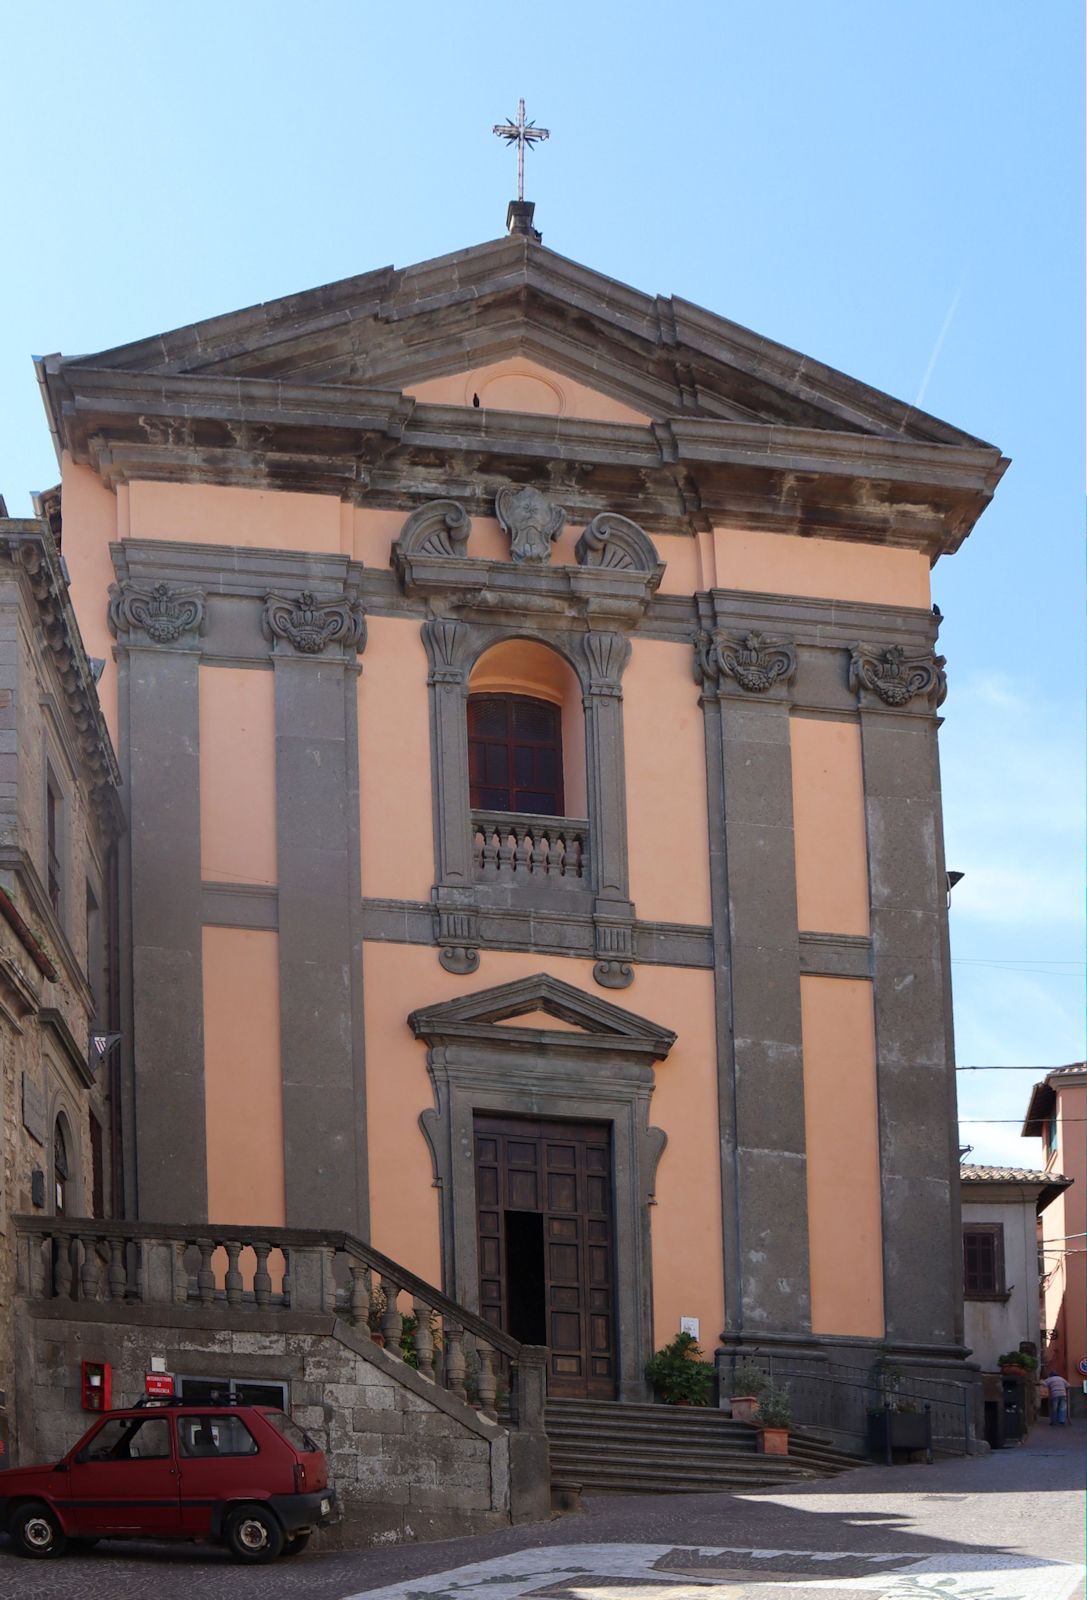 Eutitius-Kirche, früher die Kathedrale der Stadt, in Soriano nel Cimino